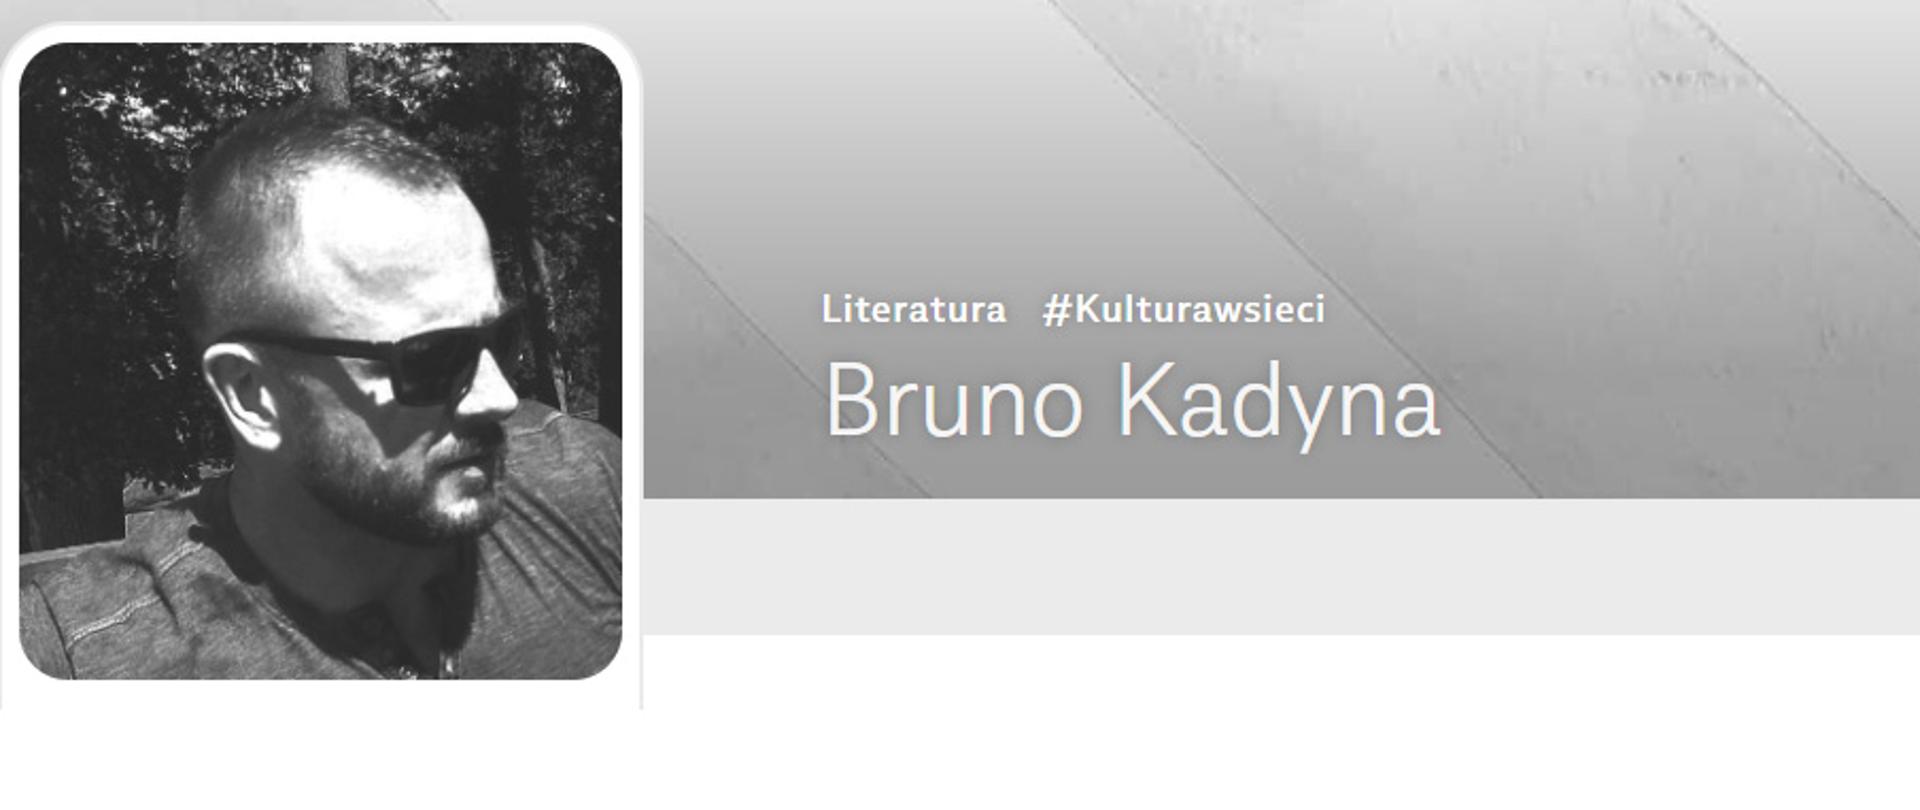 Bruno Kadyna